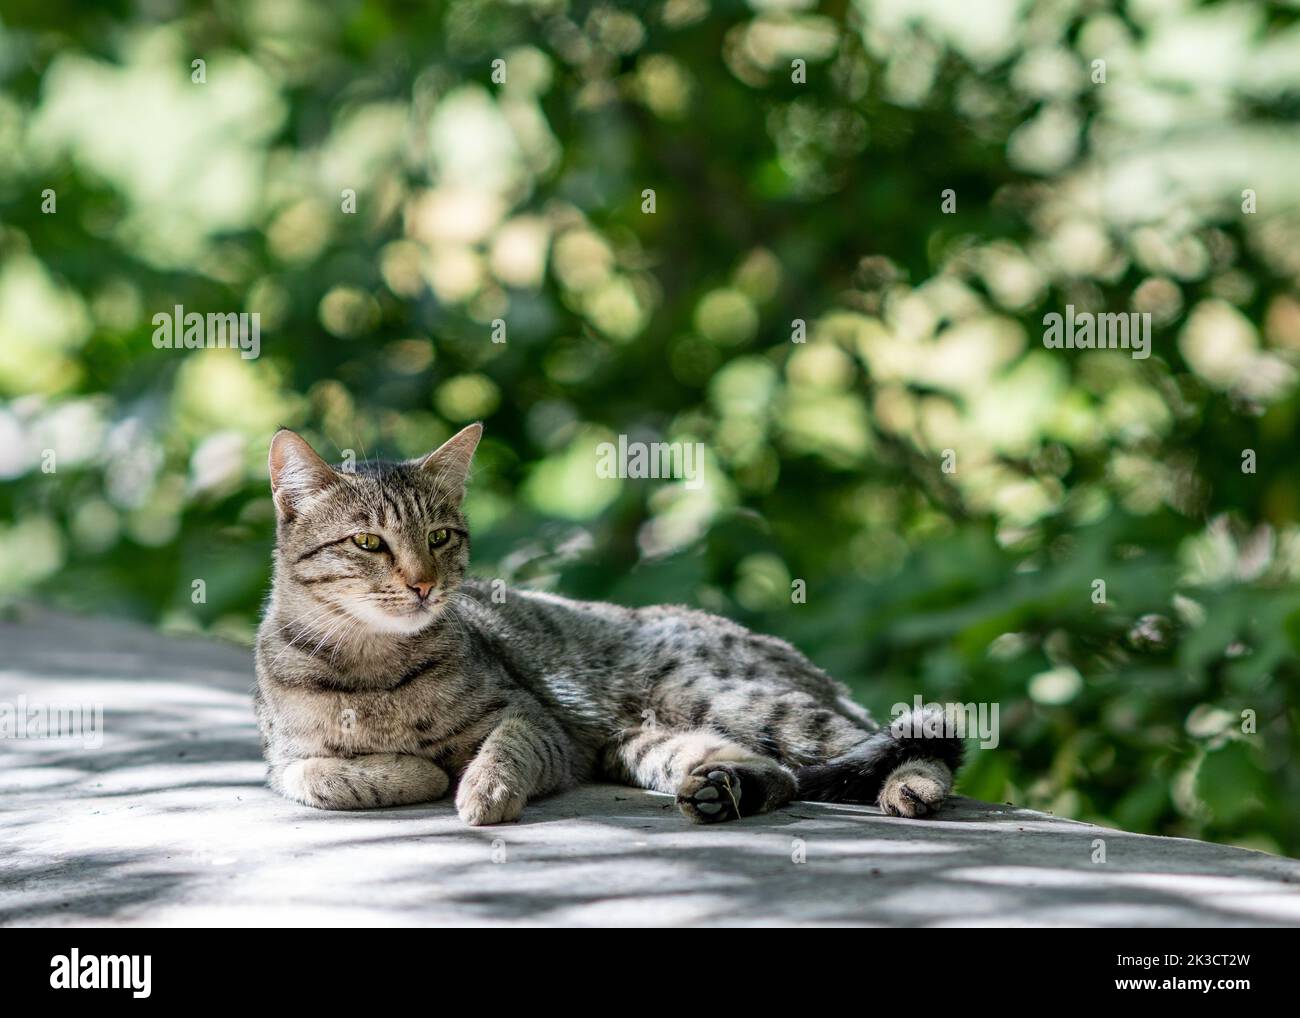 Un gato doméstico adorable está despertando el descanso con el fondo del follaje del desenfoque. Fotografía de alta calidad Foto de stock